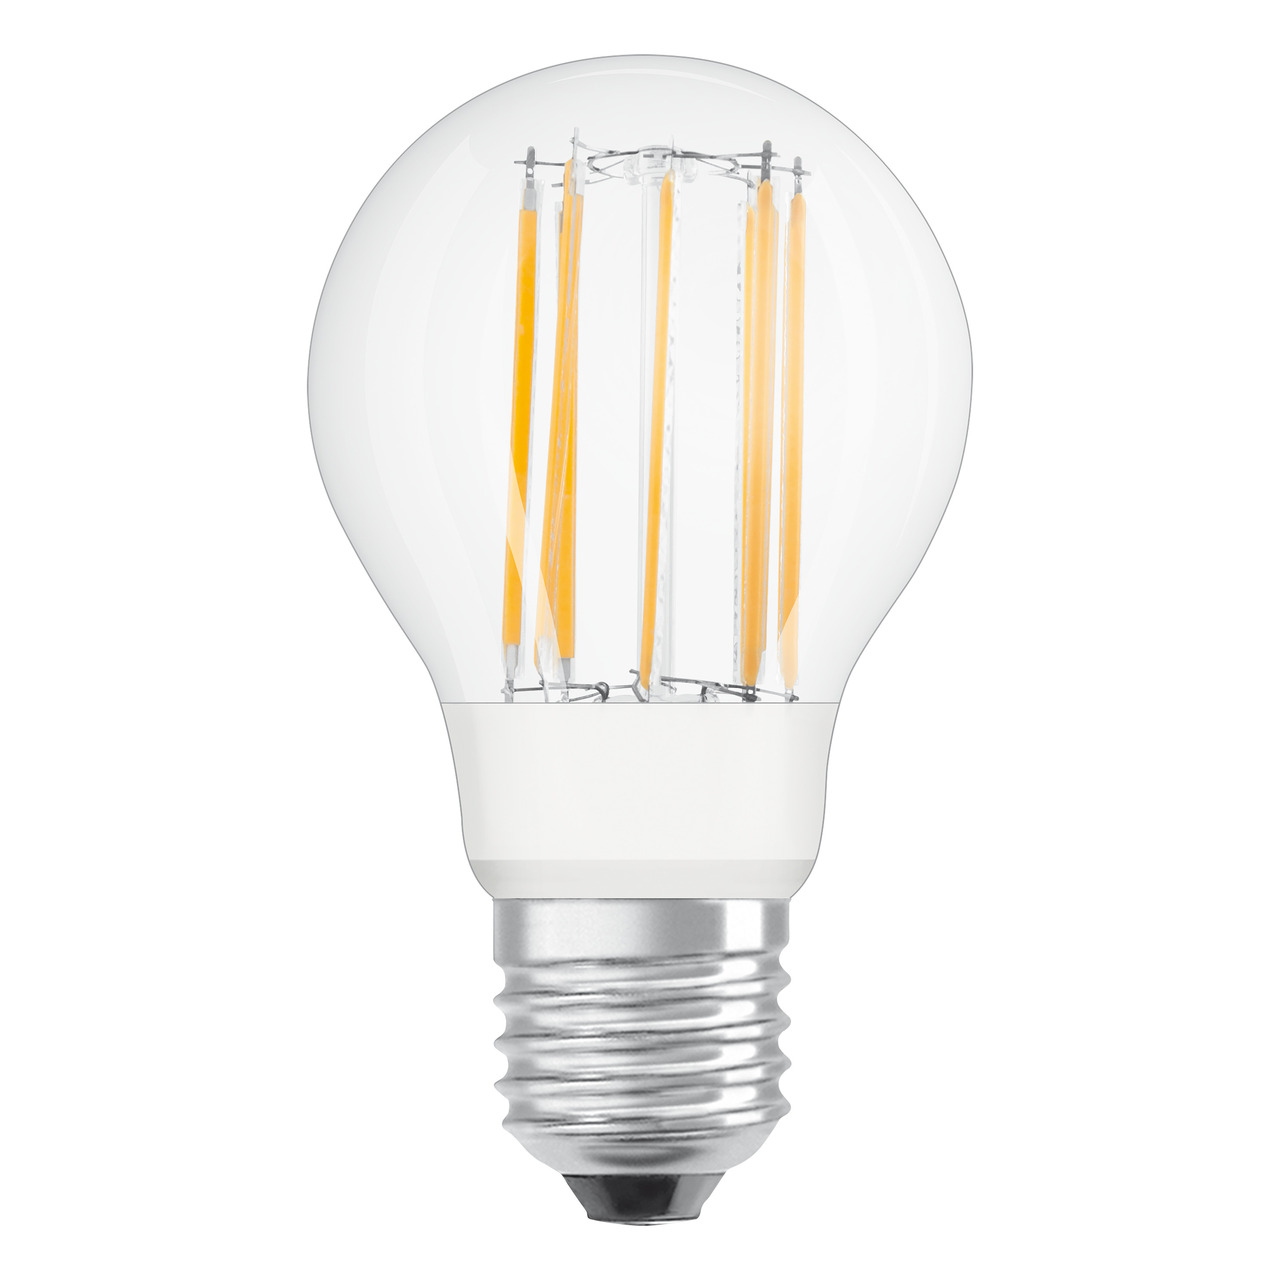 OSRAM LED Superstar 7-5-W-Filament-LED-Lampe E27- neutralweiss- klar- dimmbar- 1055 lm unter Beleuchtung